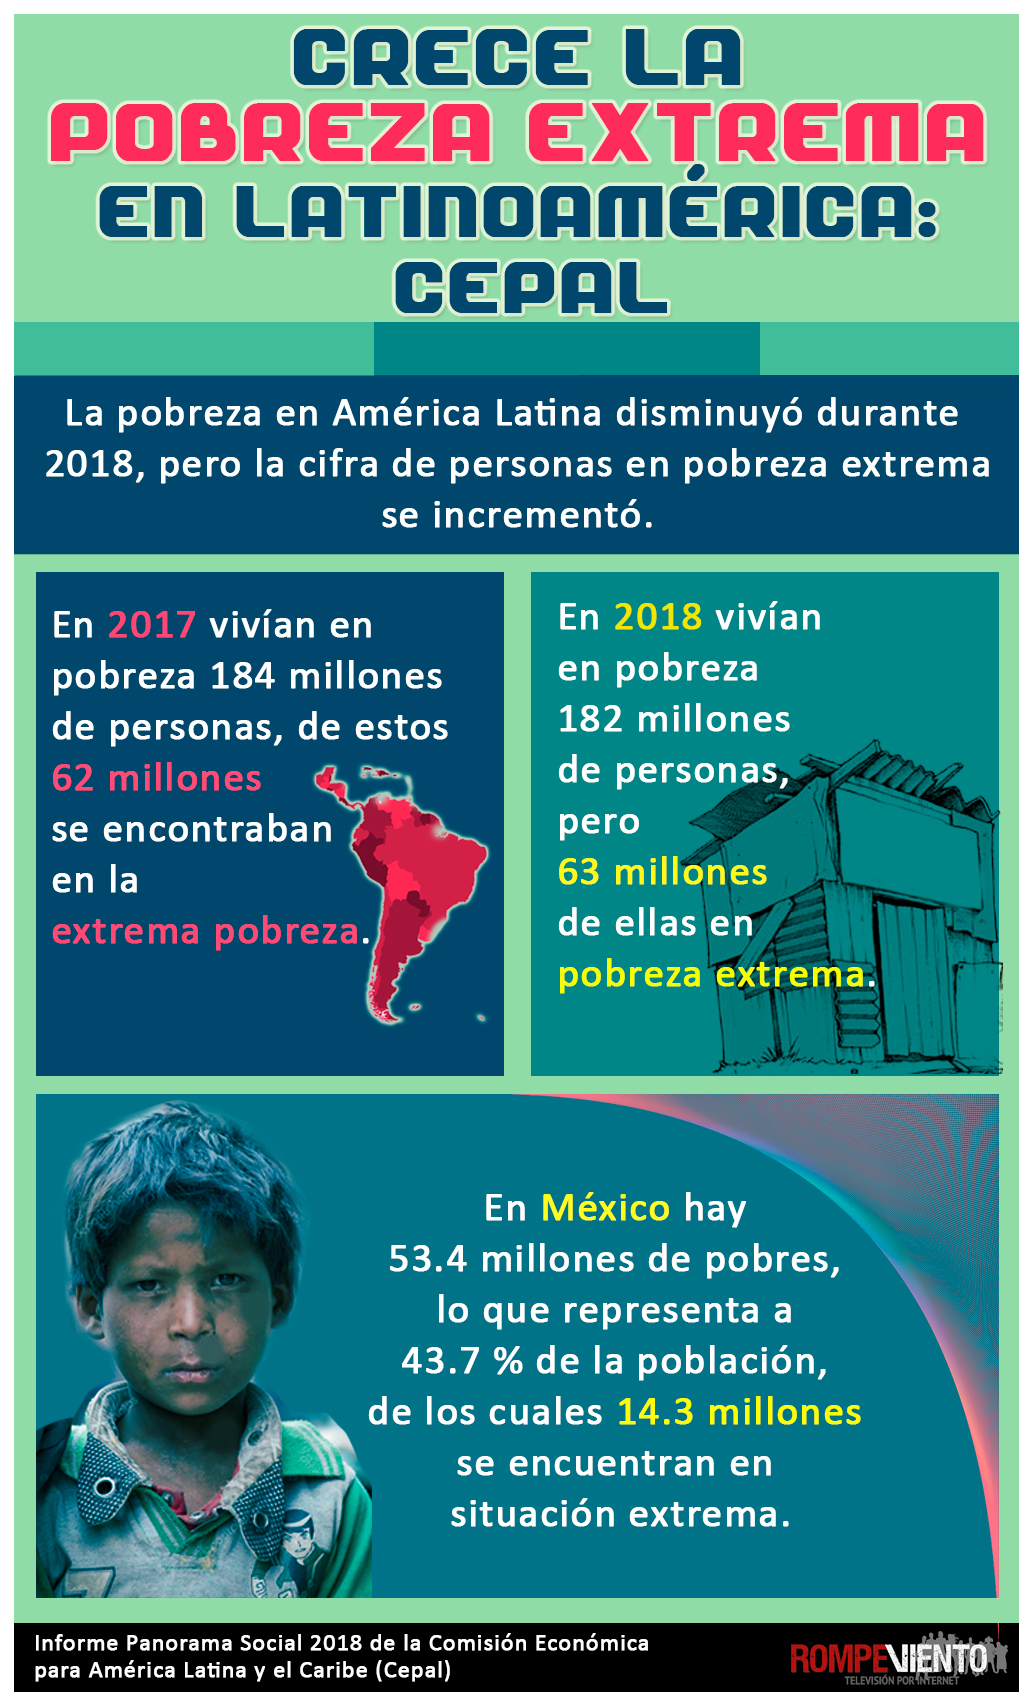 Crece la pobreza extrema en Latinoamérica: CEPAL